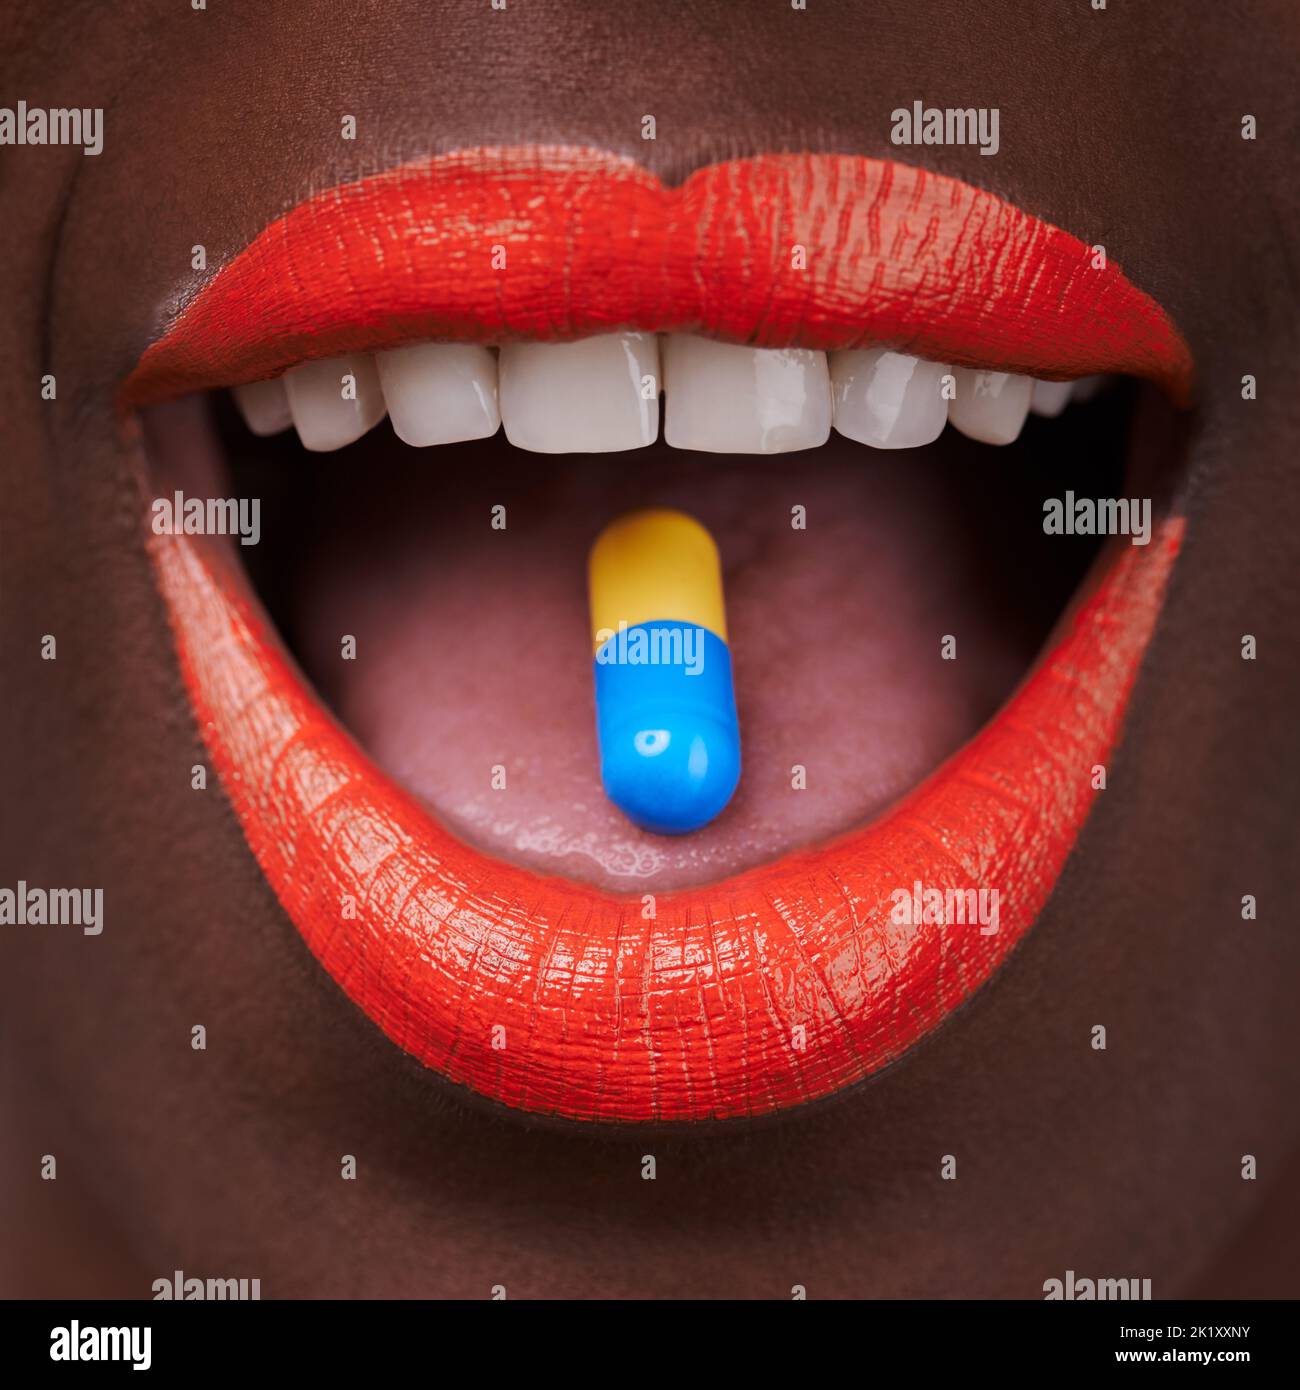 Verleihen Sie Ihrer Welt Farbe. Beschnittene Ansicht einer afrikanischen Frau mit leuchtend roten Lippen, die eine Pille nimmt. Stockfoto